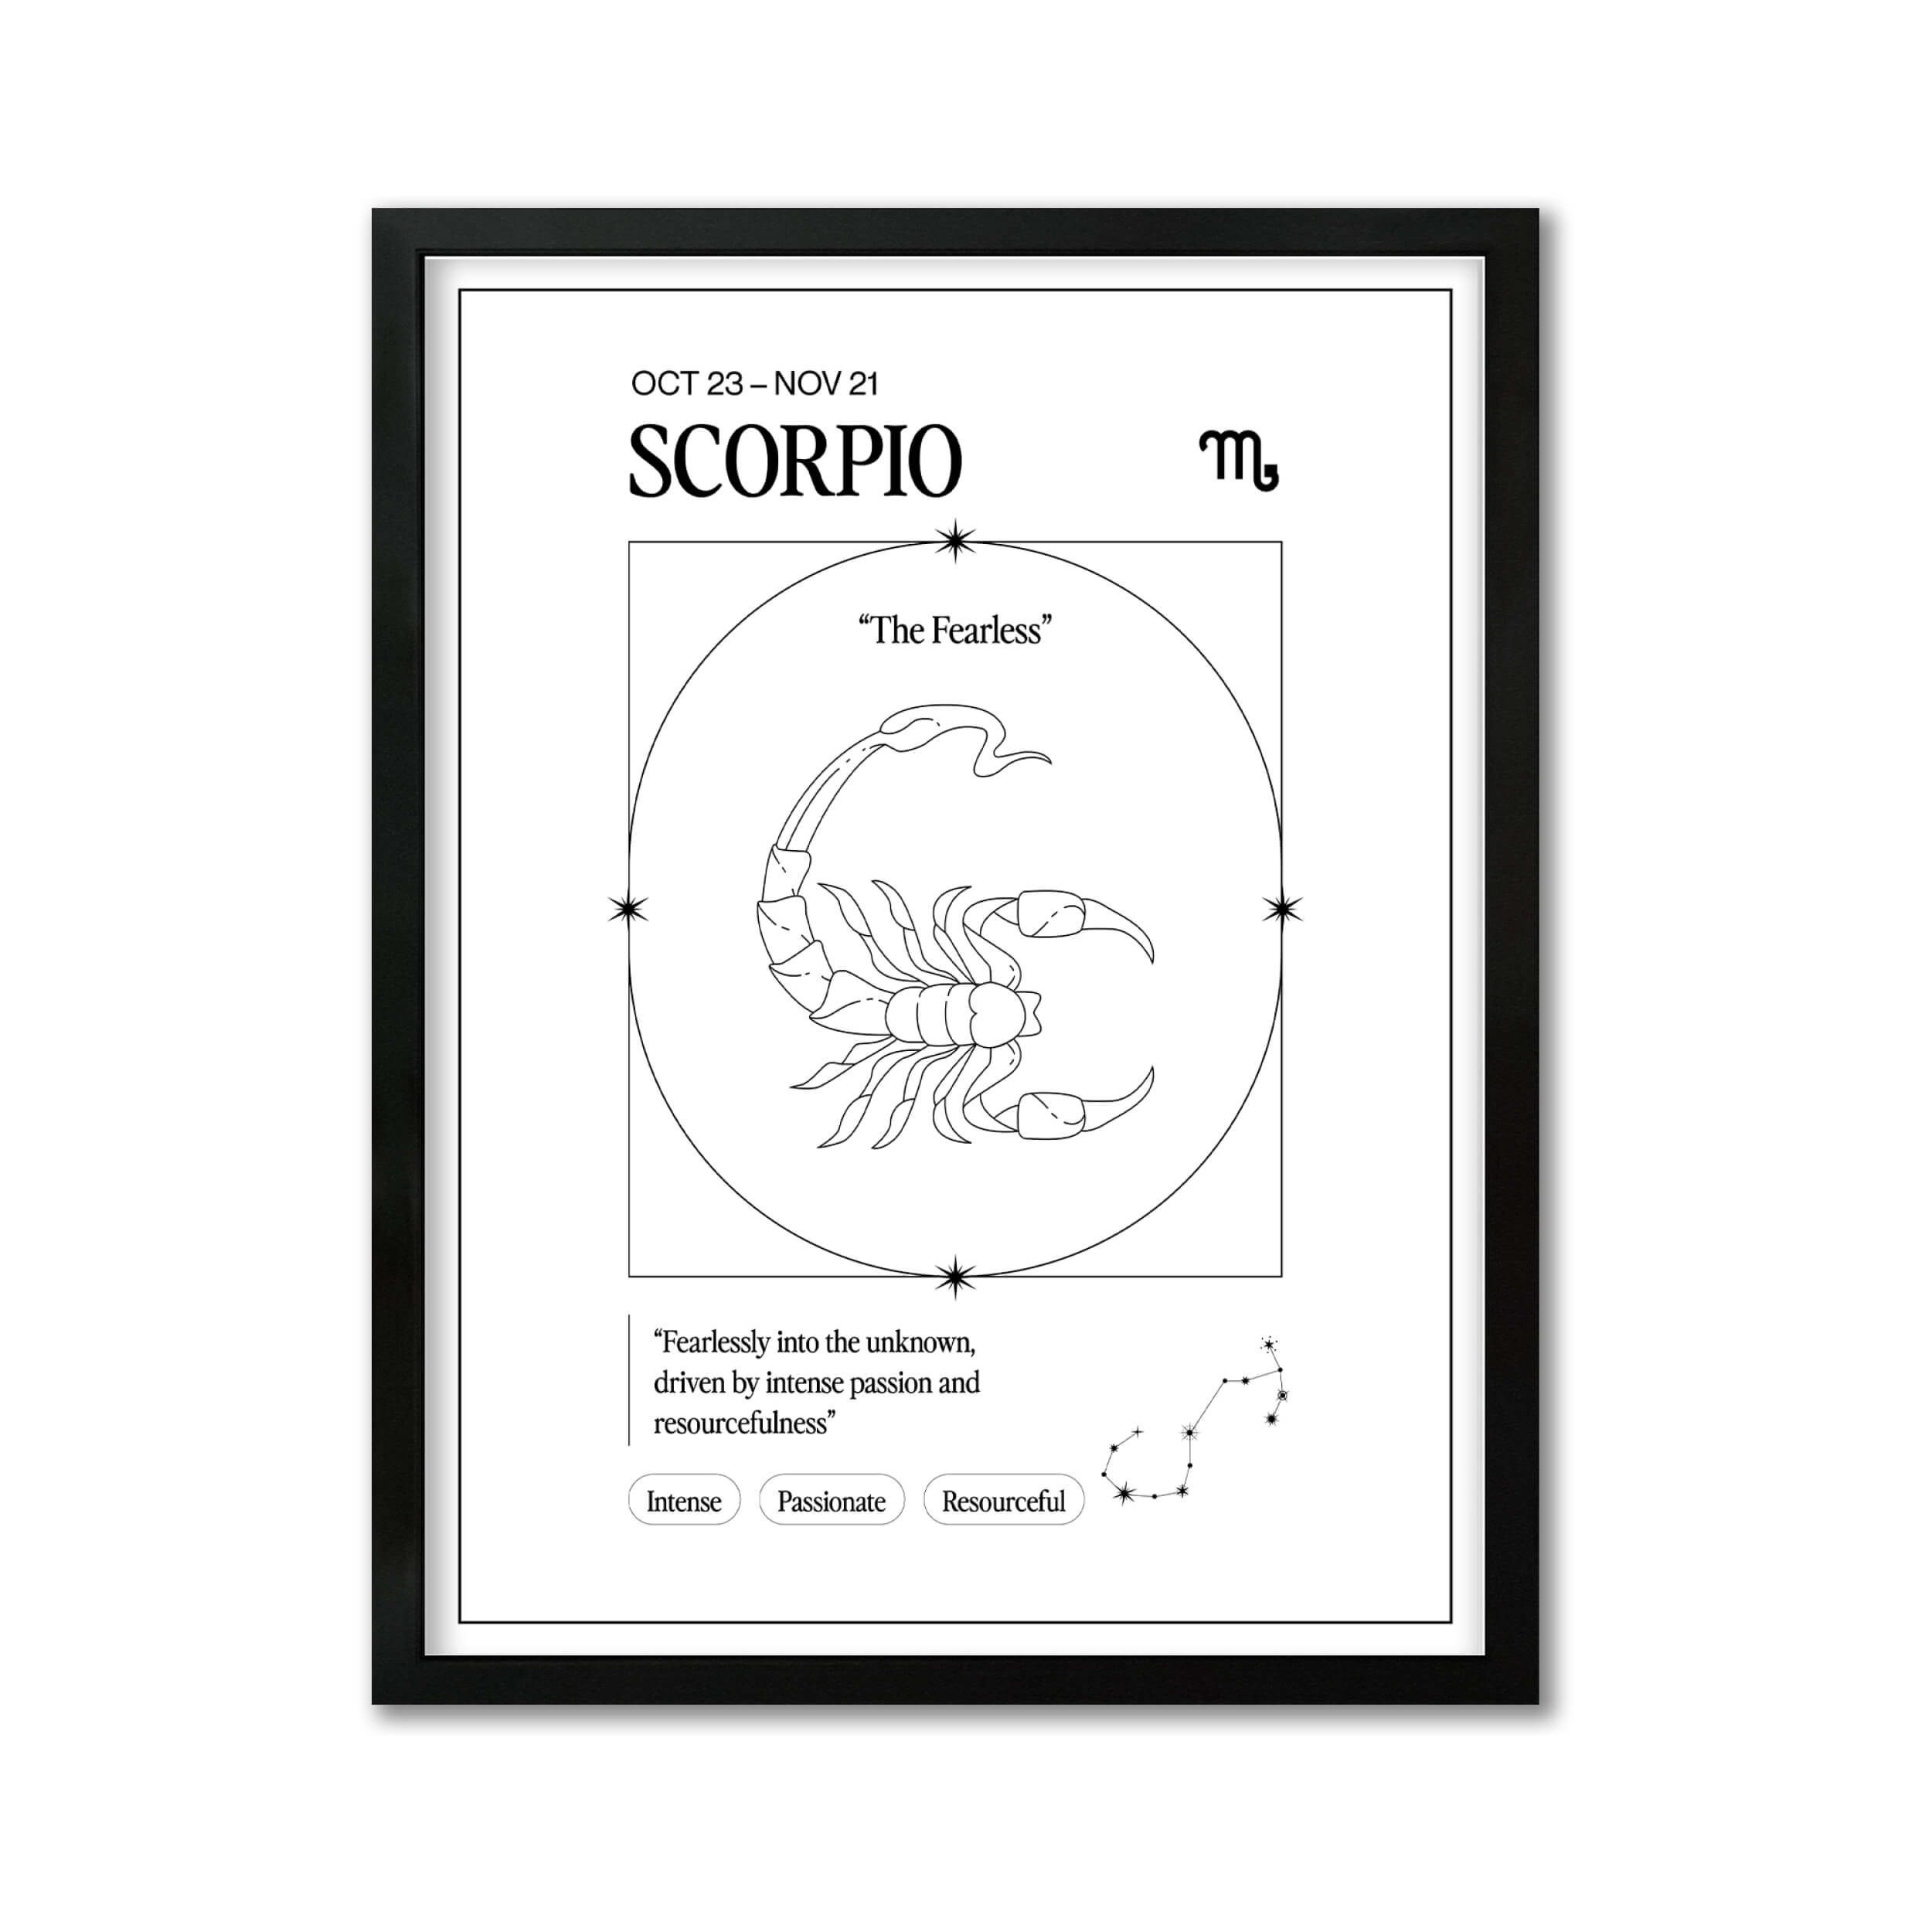 Escorpio – Ilustración – Mapa Zodiacal